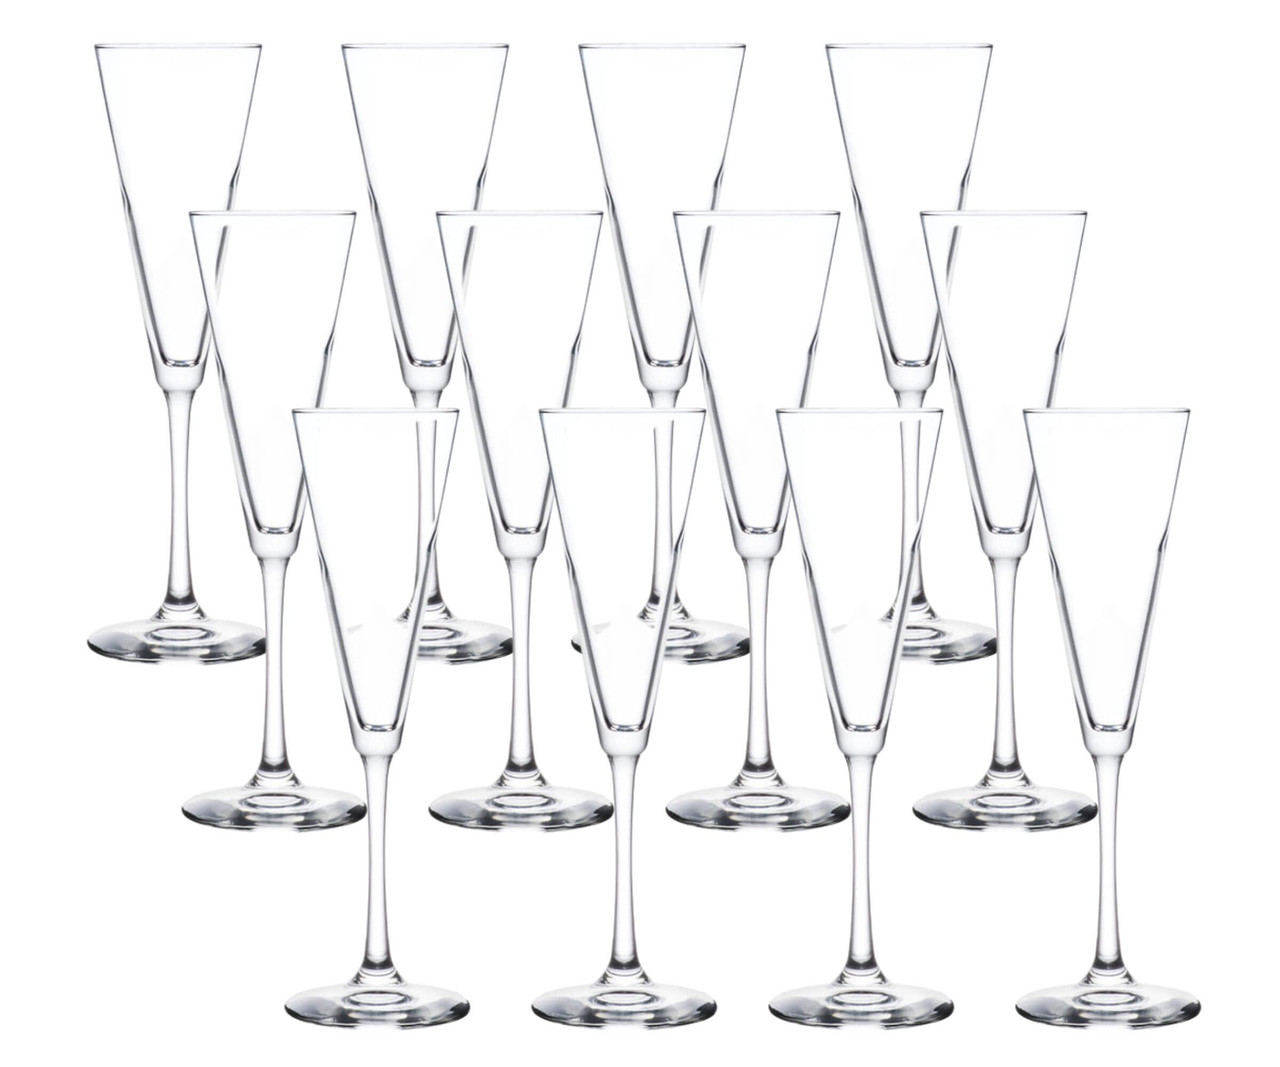 Vina 8.5oz Stemless Flute Glasses (Set of 4), Libbey